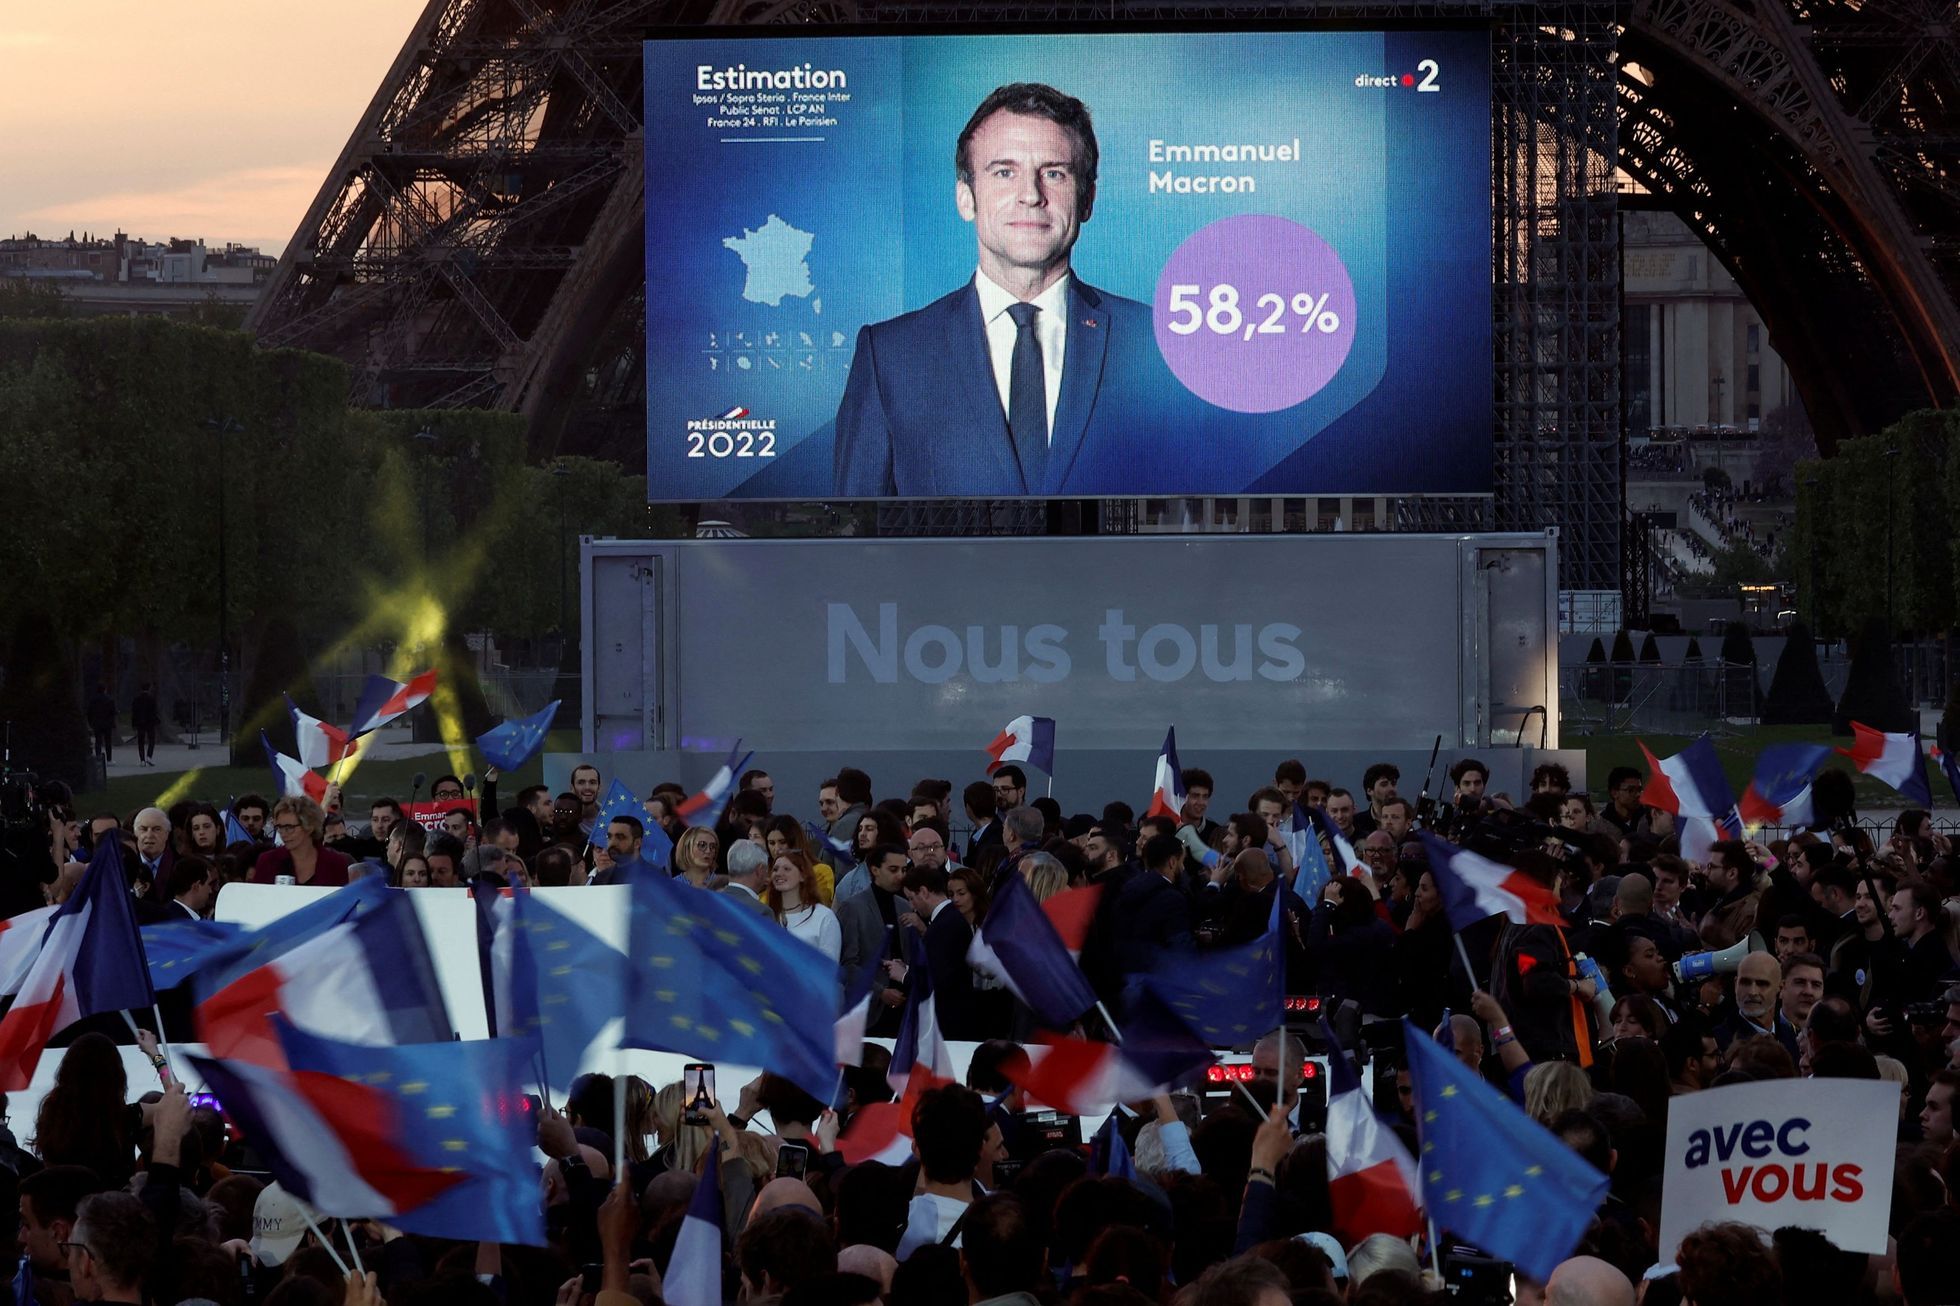 Le populisme a été vaincu, les politiques félicitent Macron.  Biden veut une coopération étroite